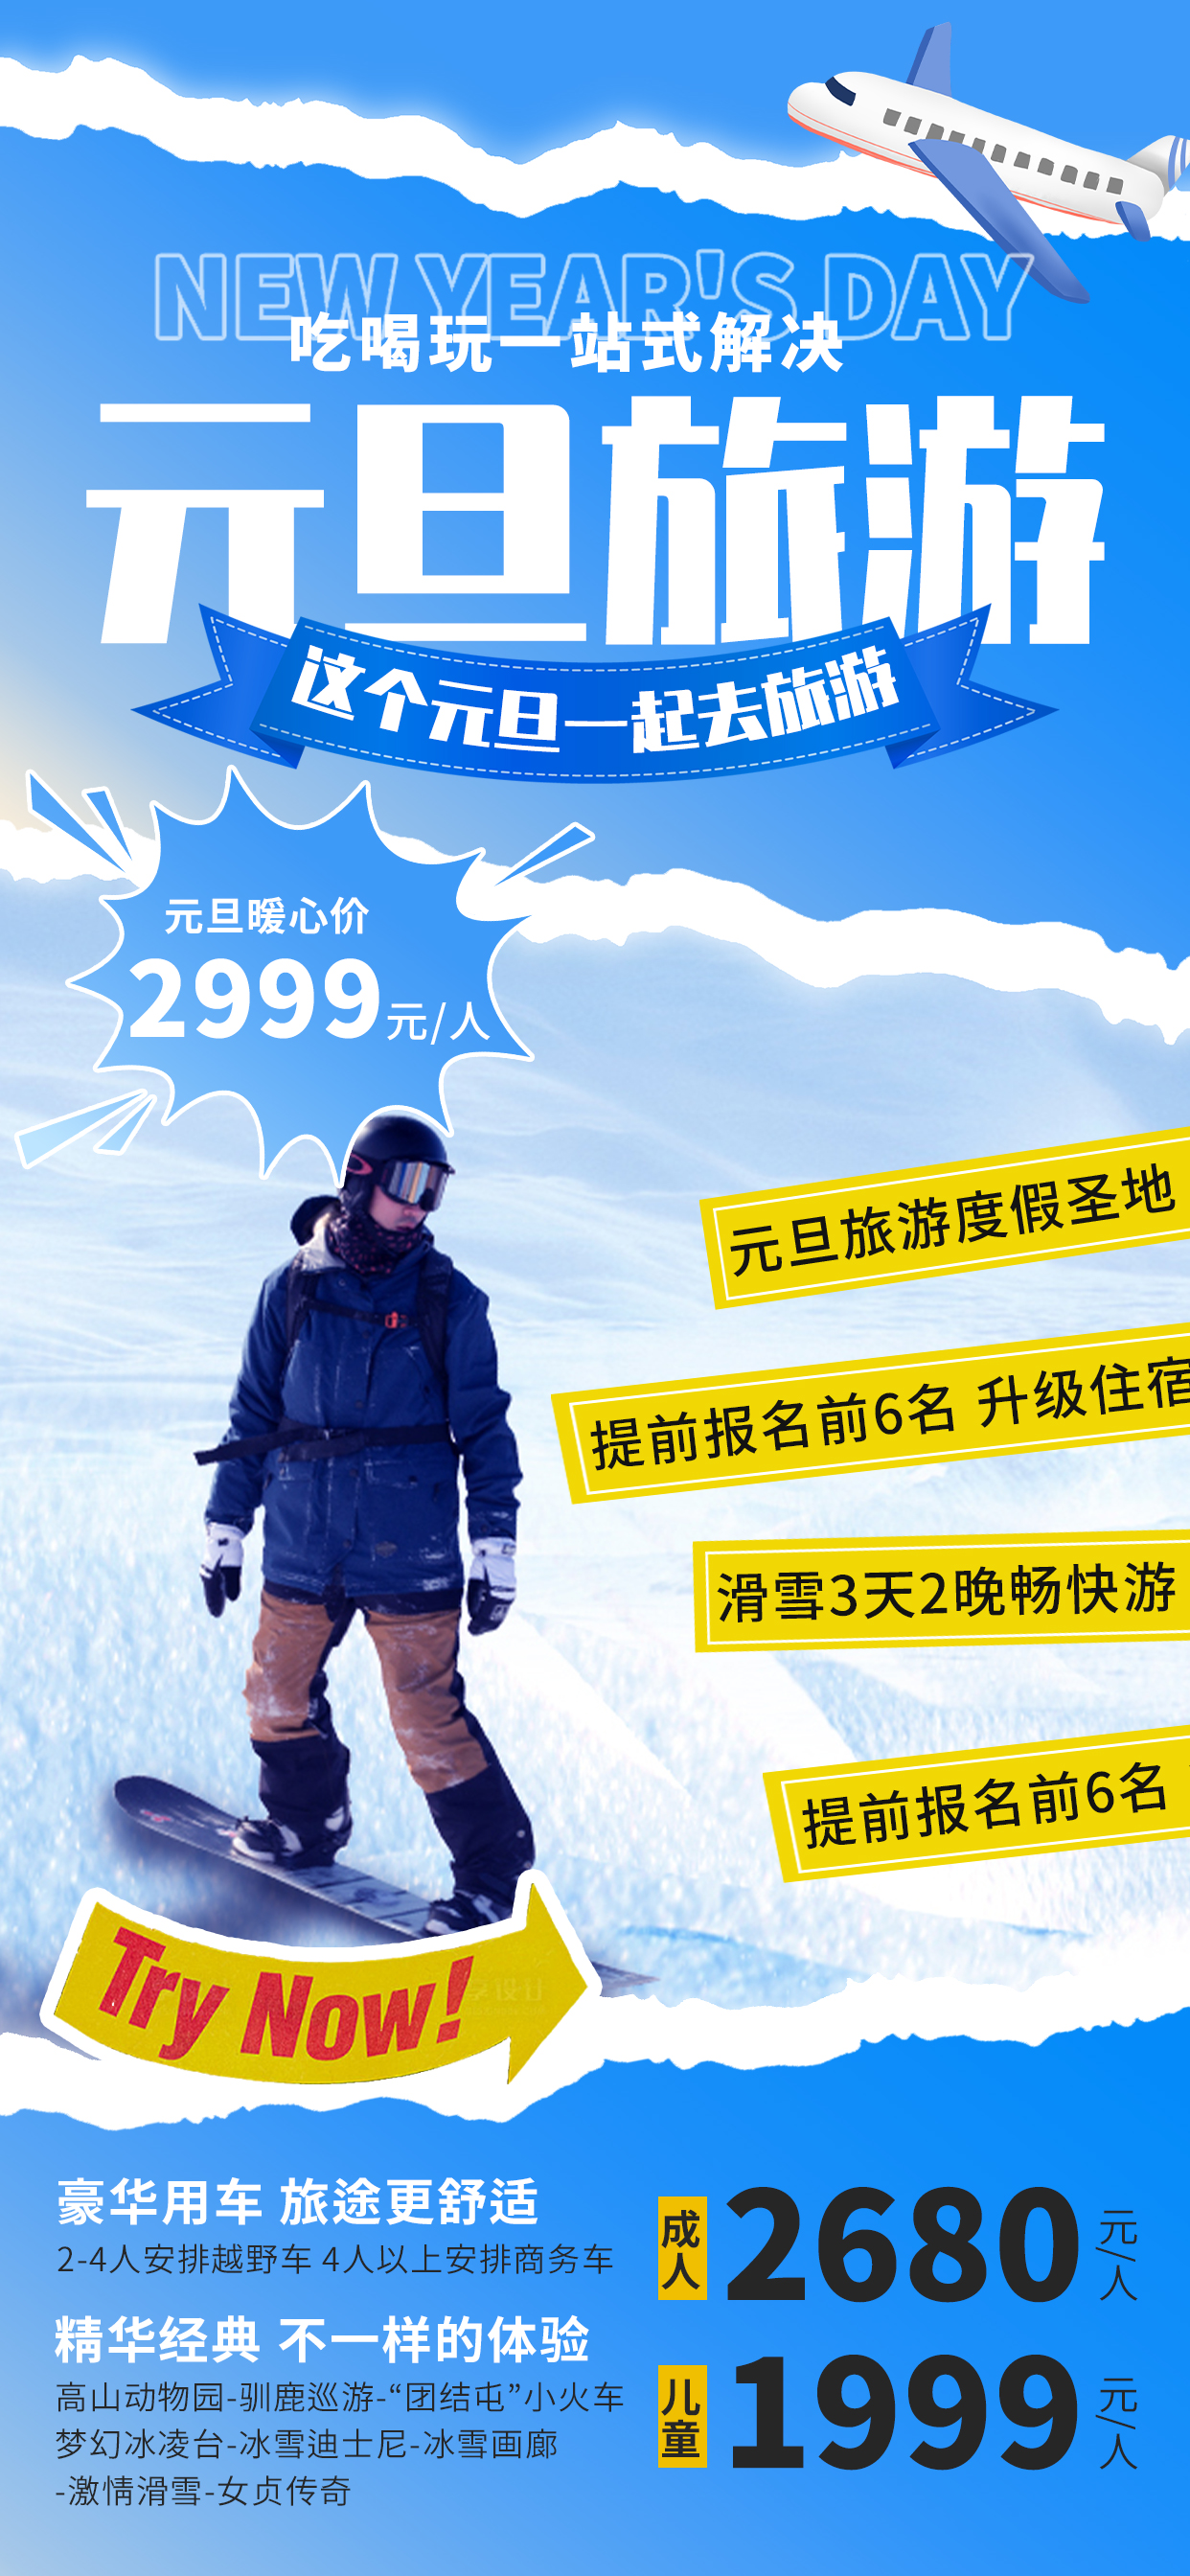 元旦旅游滑雪蓝色旅游广告宣传海报图片